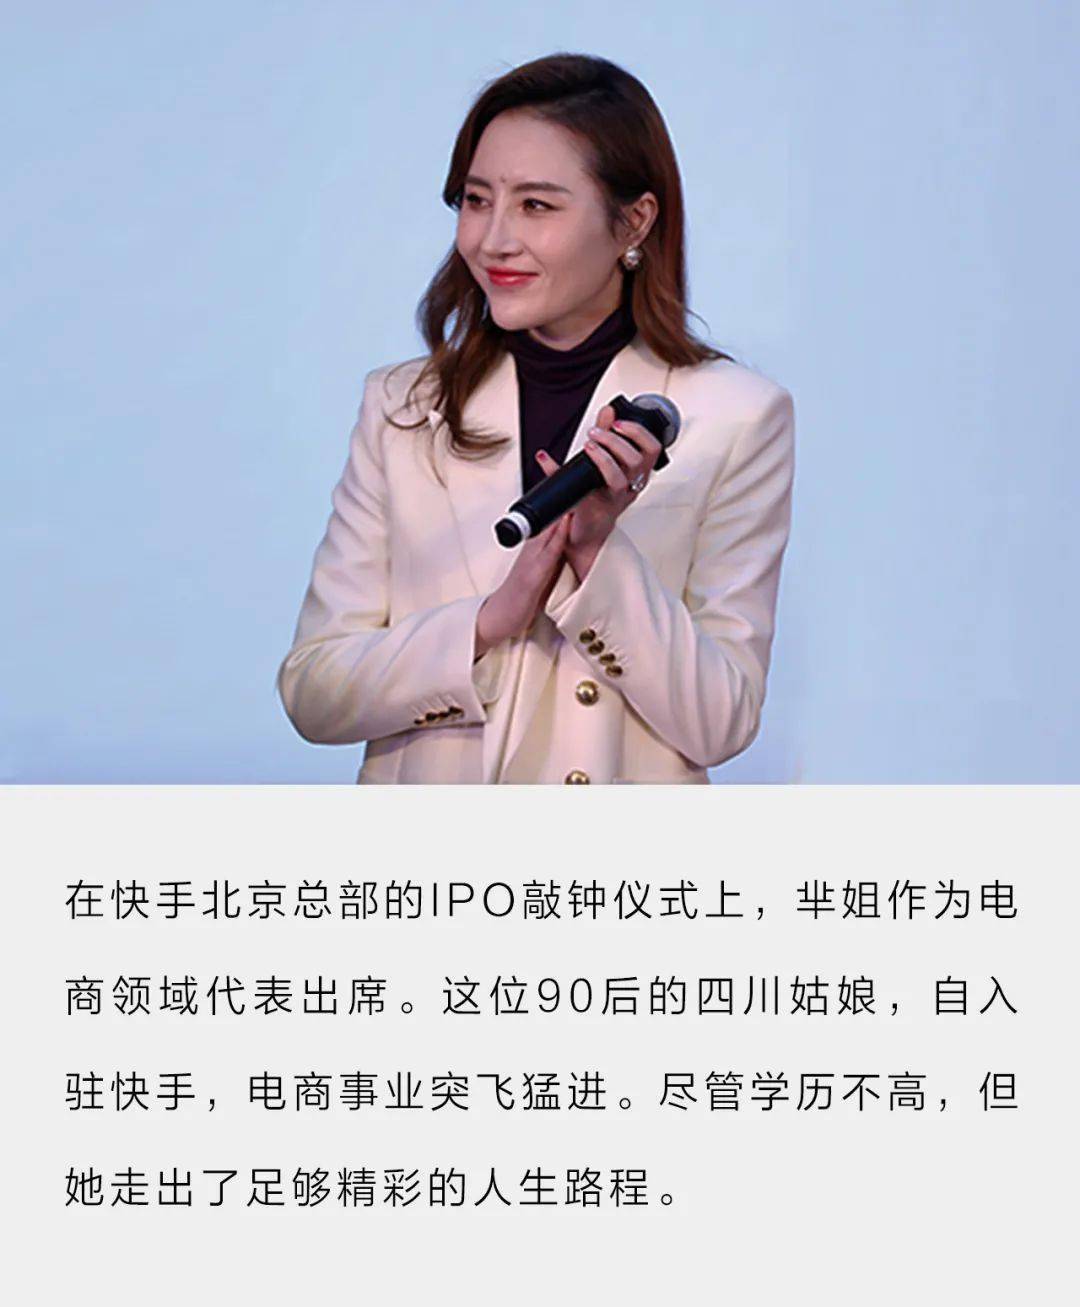 2月5日,快手正式在港交所挂牌上市,芈姐在广州开服装厂的主播芈姐